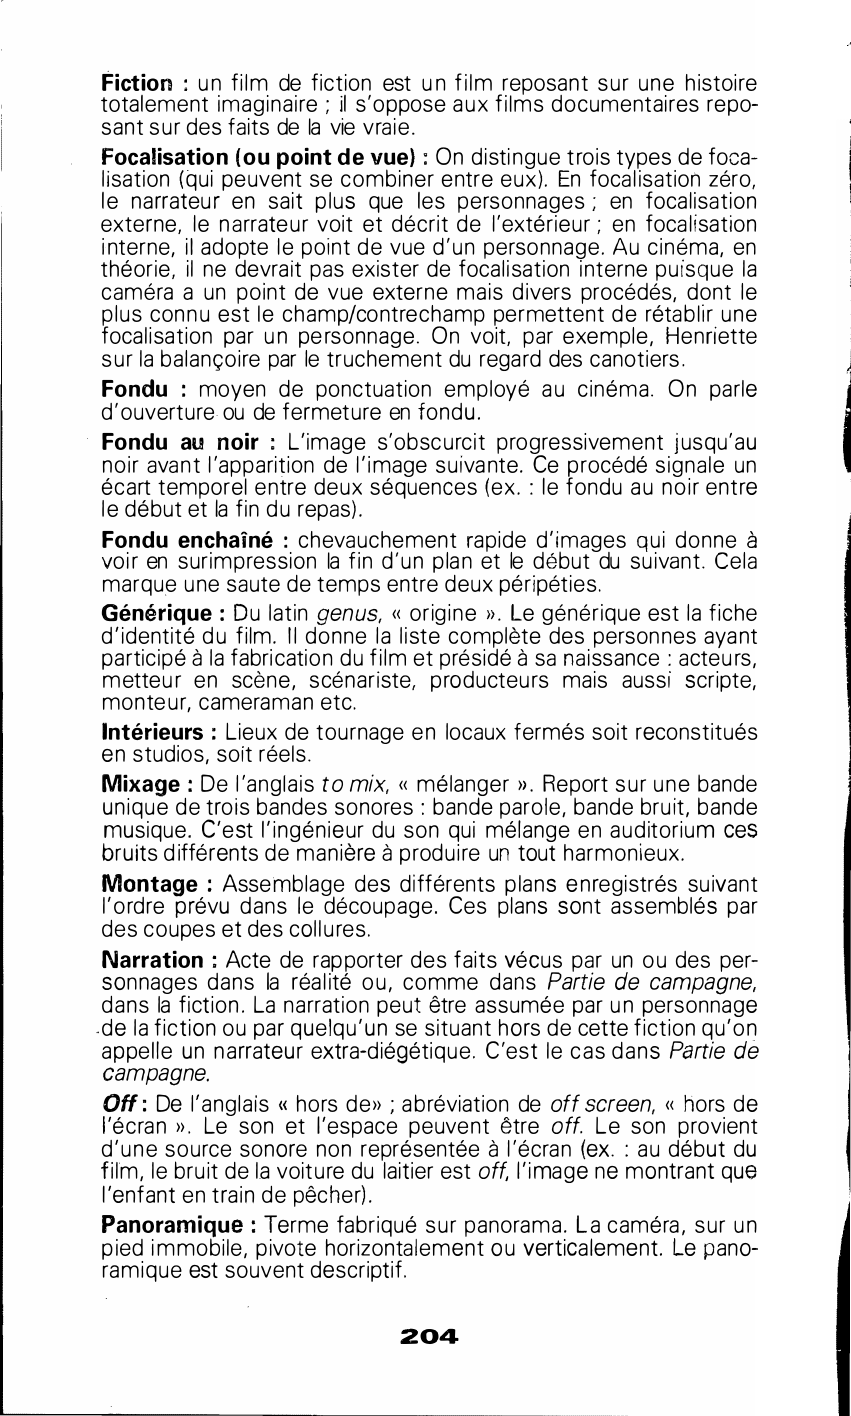 Prévisualisation du document LEXIQUE dans Une partie de Campagne (Maupassant et Renoir)